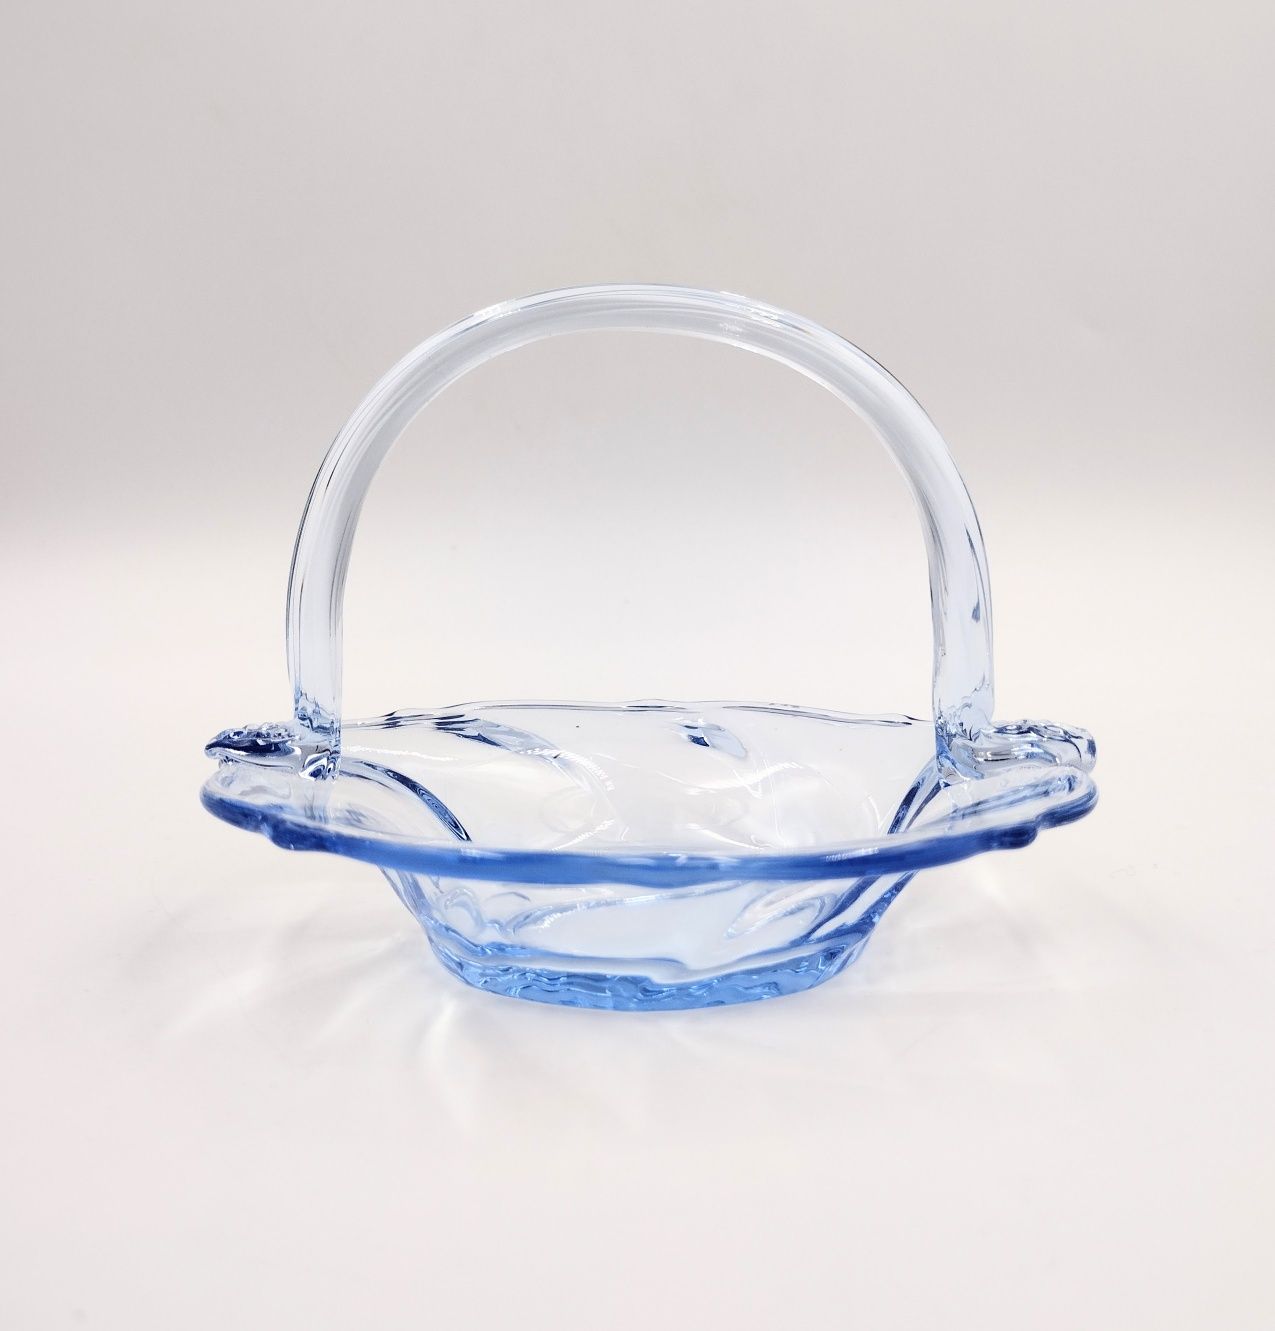 Koszyk szklany antyk retro błękitny vintage design szkło